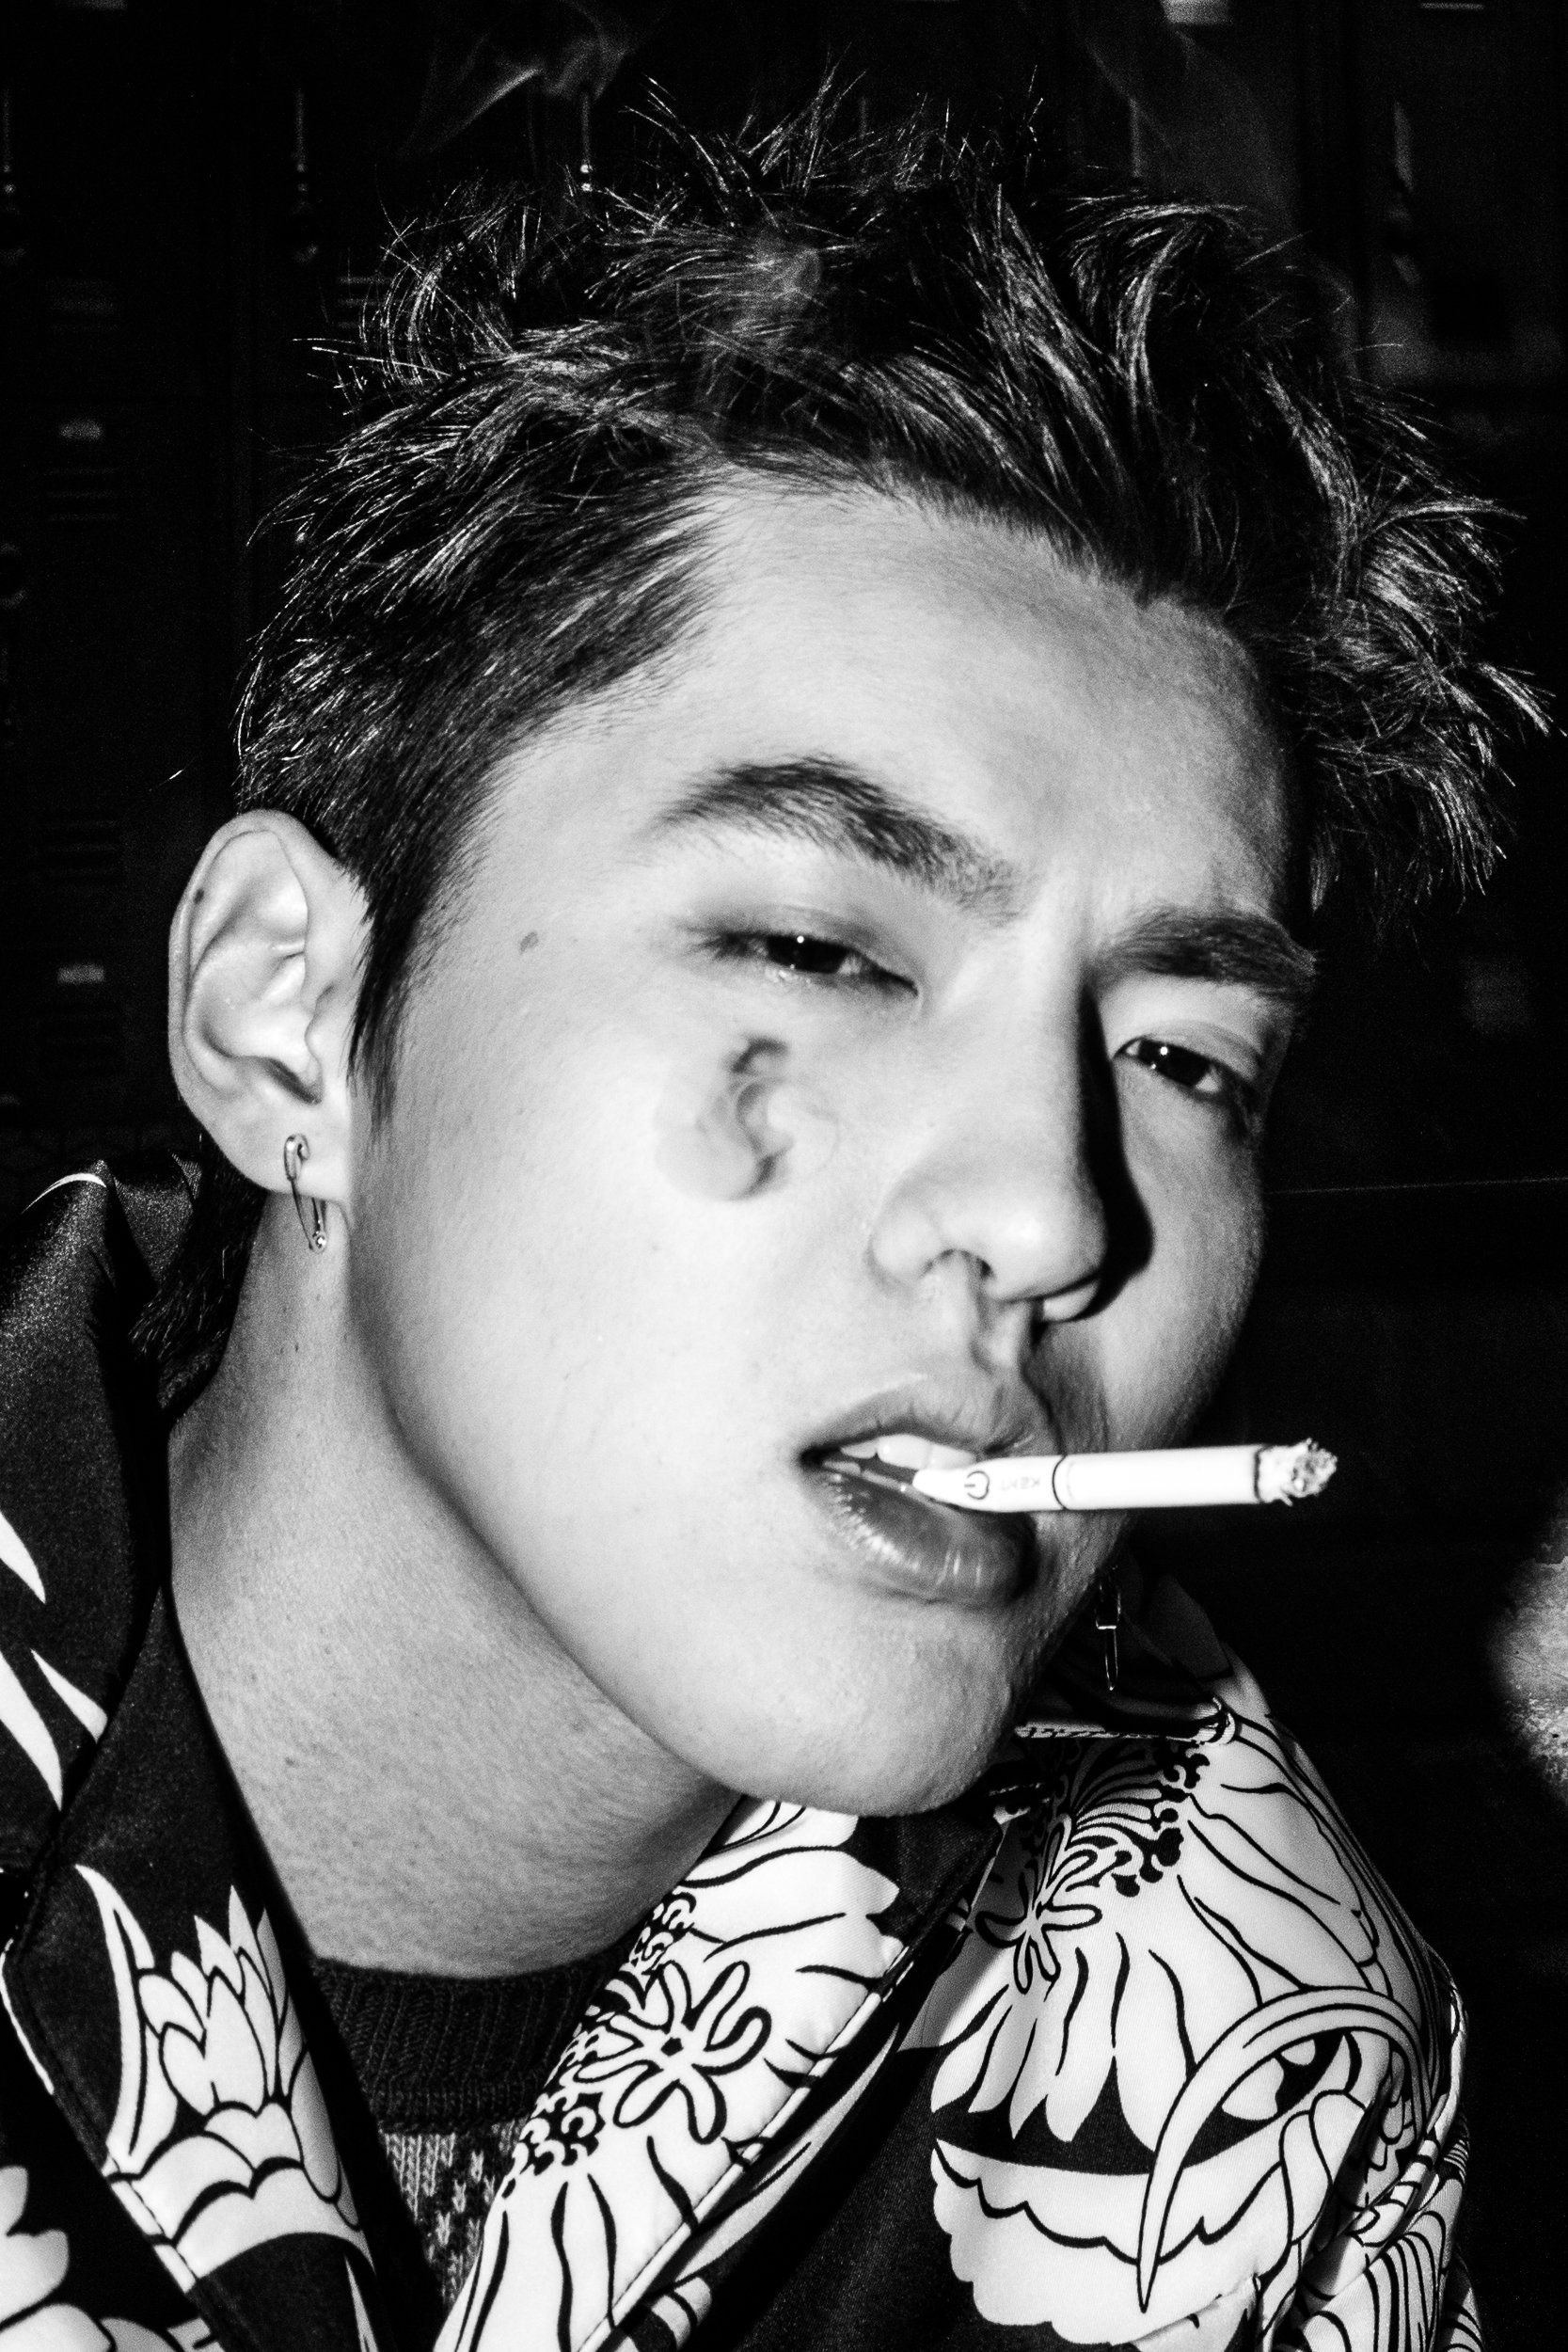 A close up of a young man smoking